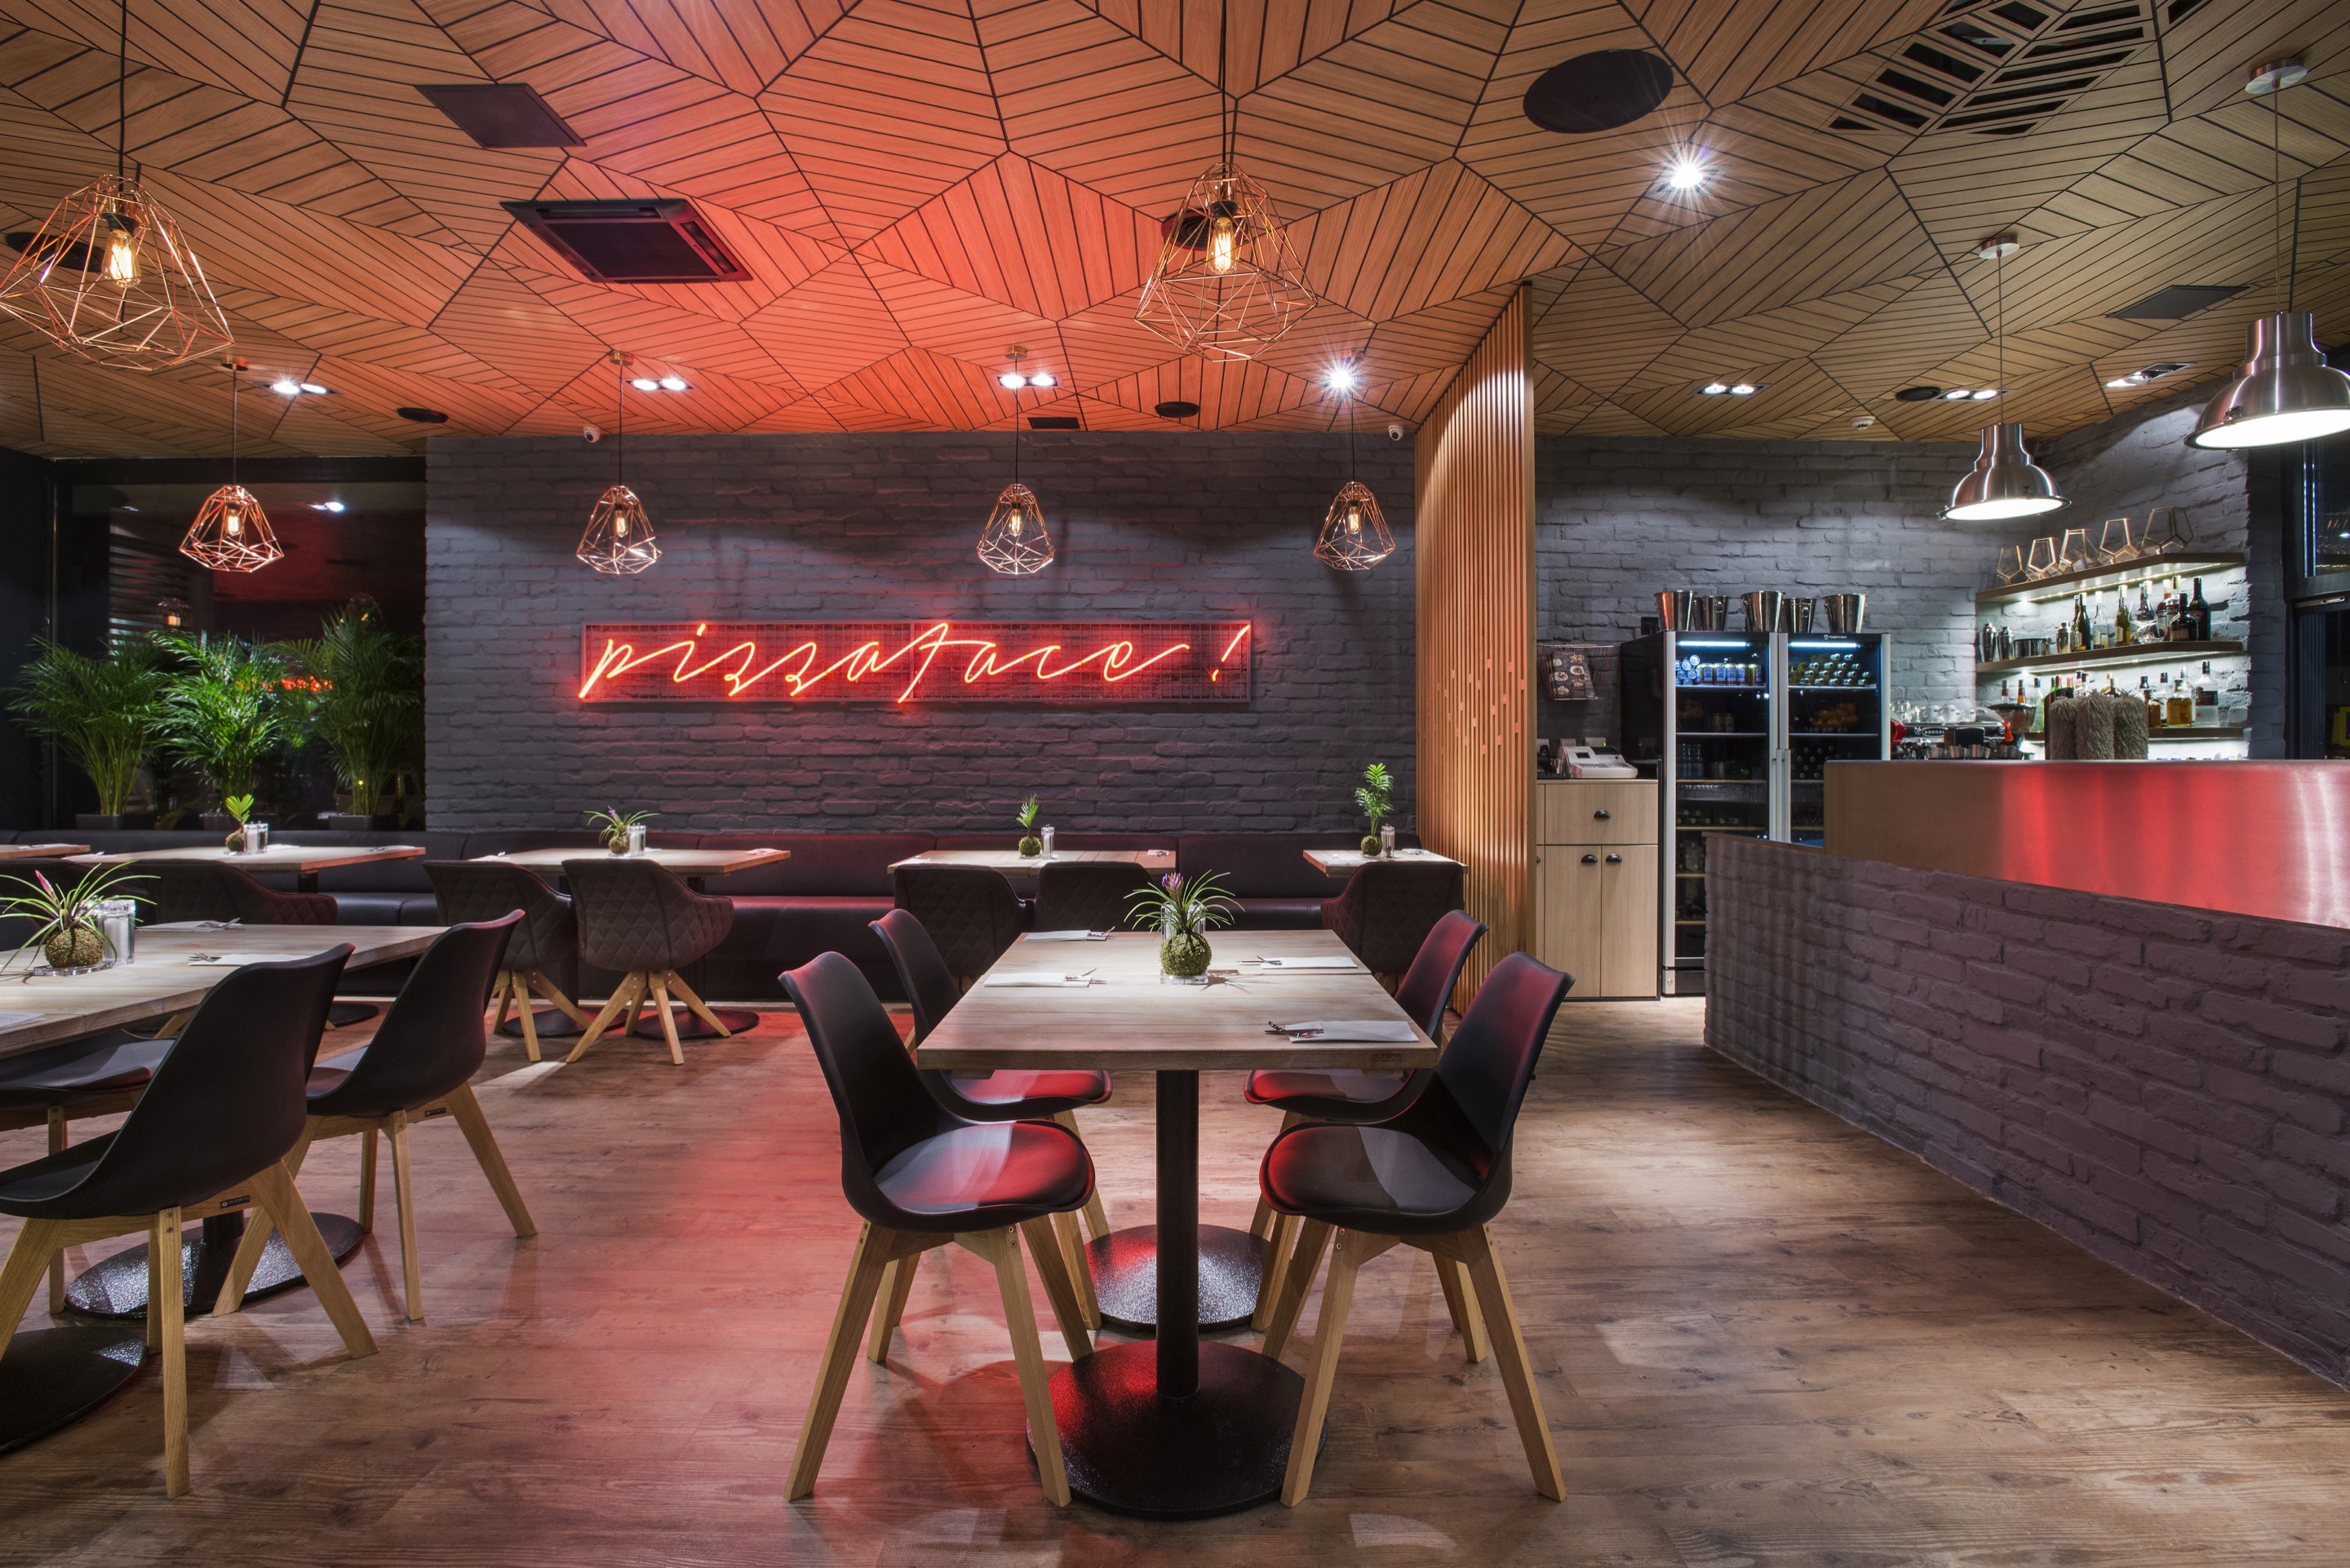 Pizza, panel, dizájn, költők – menő enteriőrt kapott a Don Pepe külvárosi pizzériája